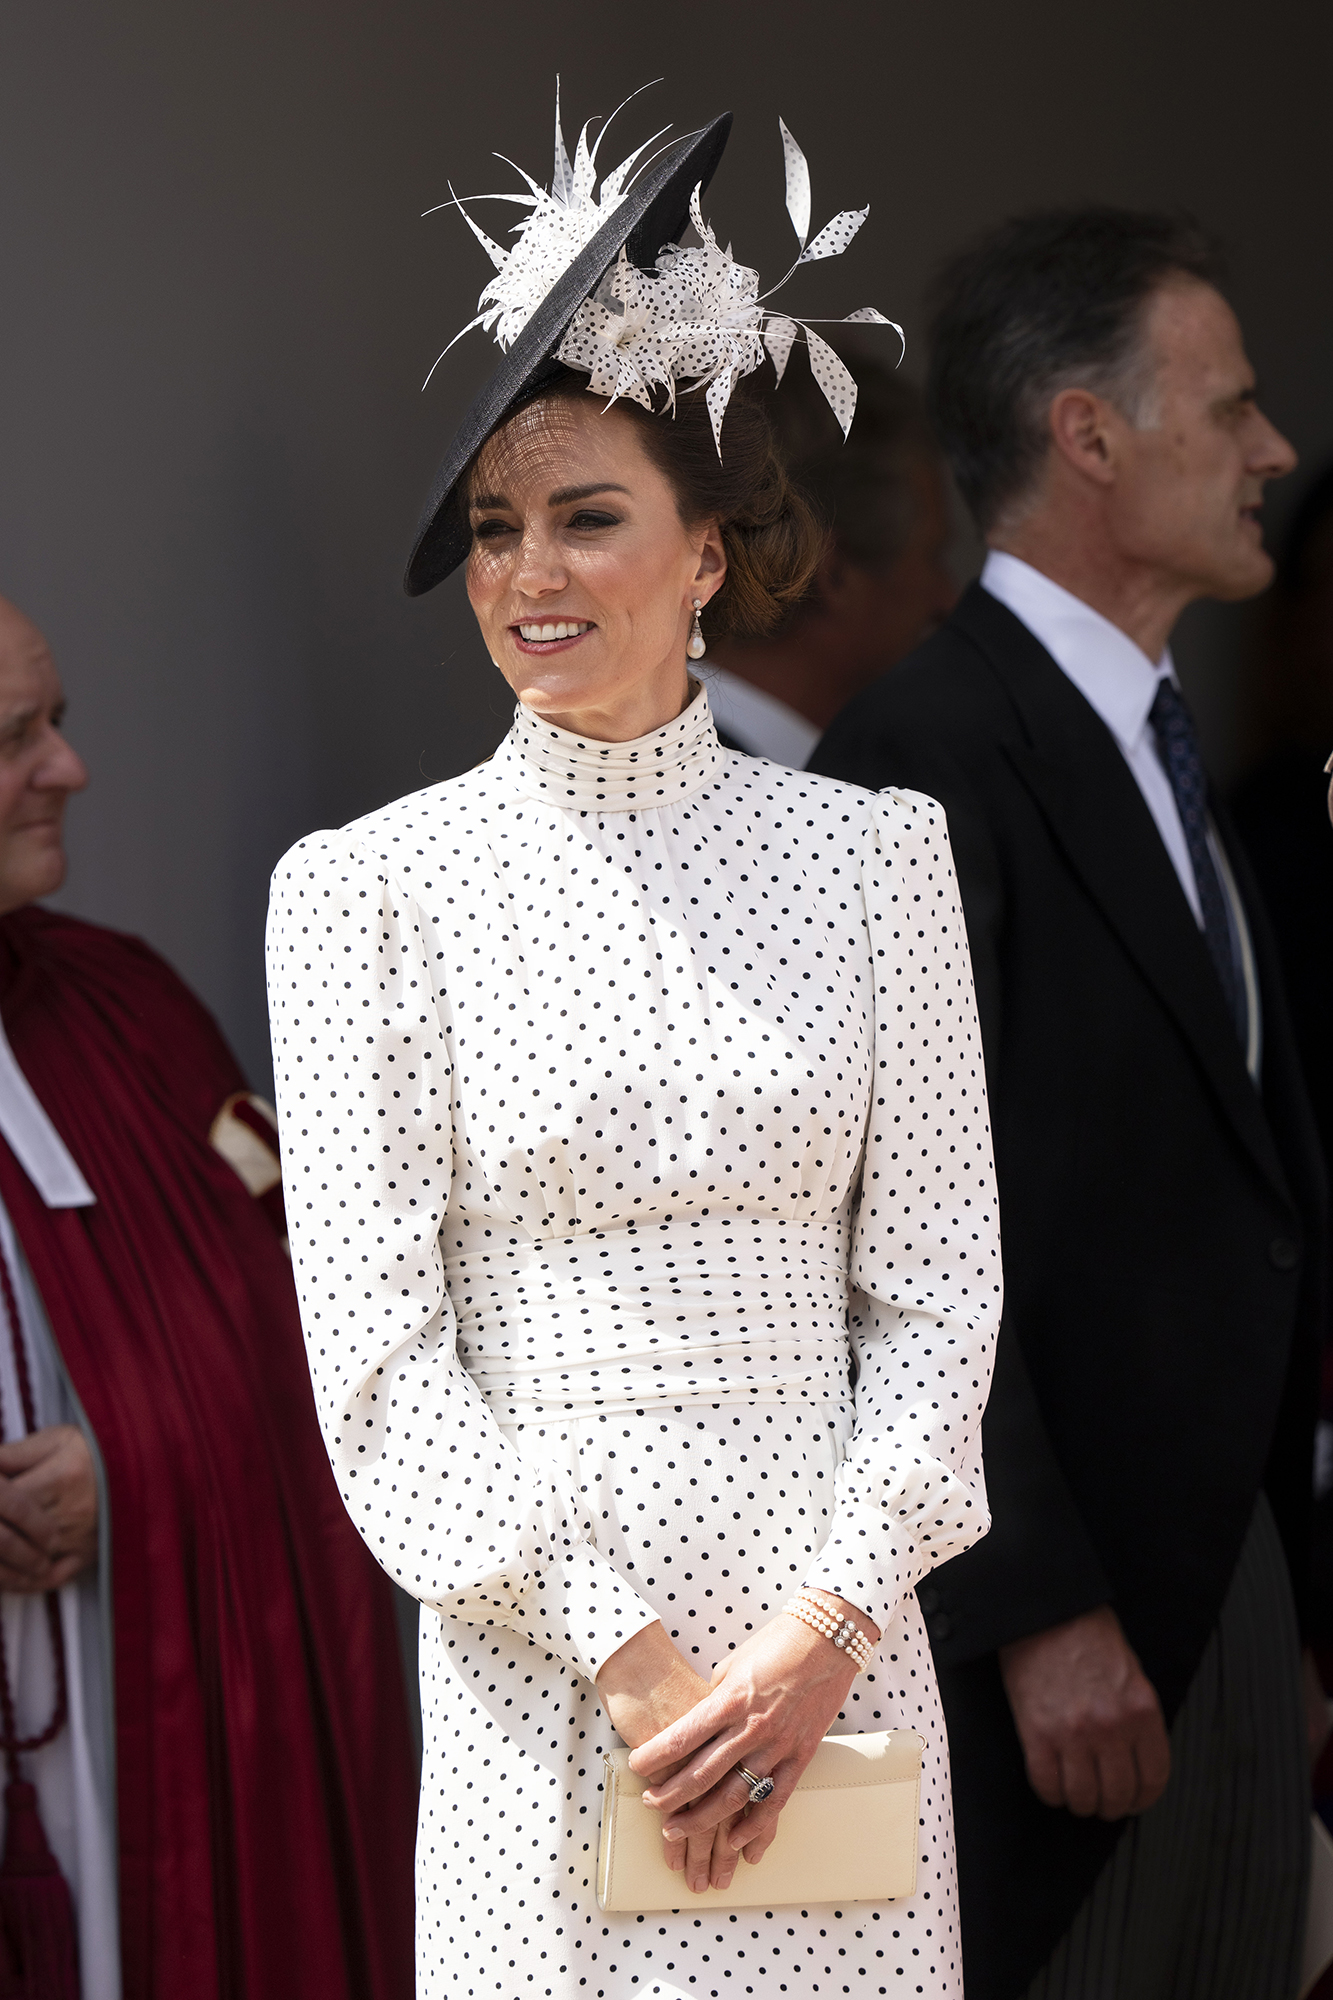 Kate Middleton Wears Polka Dot Dress for Order of the Garter: Pics